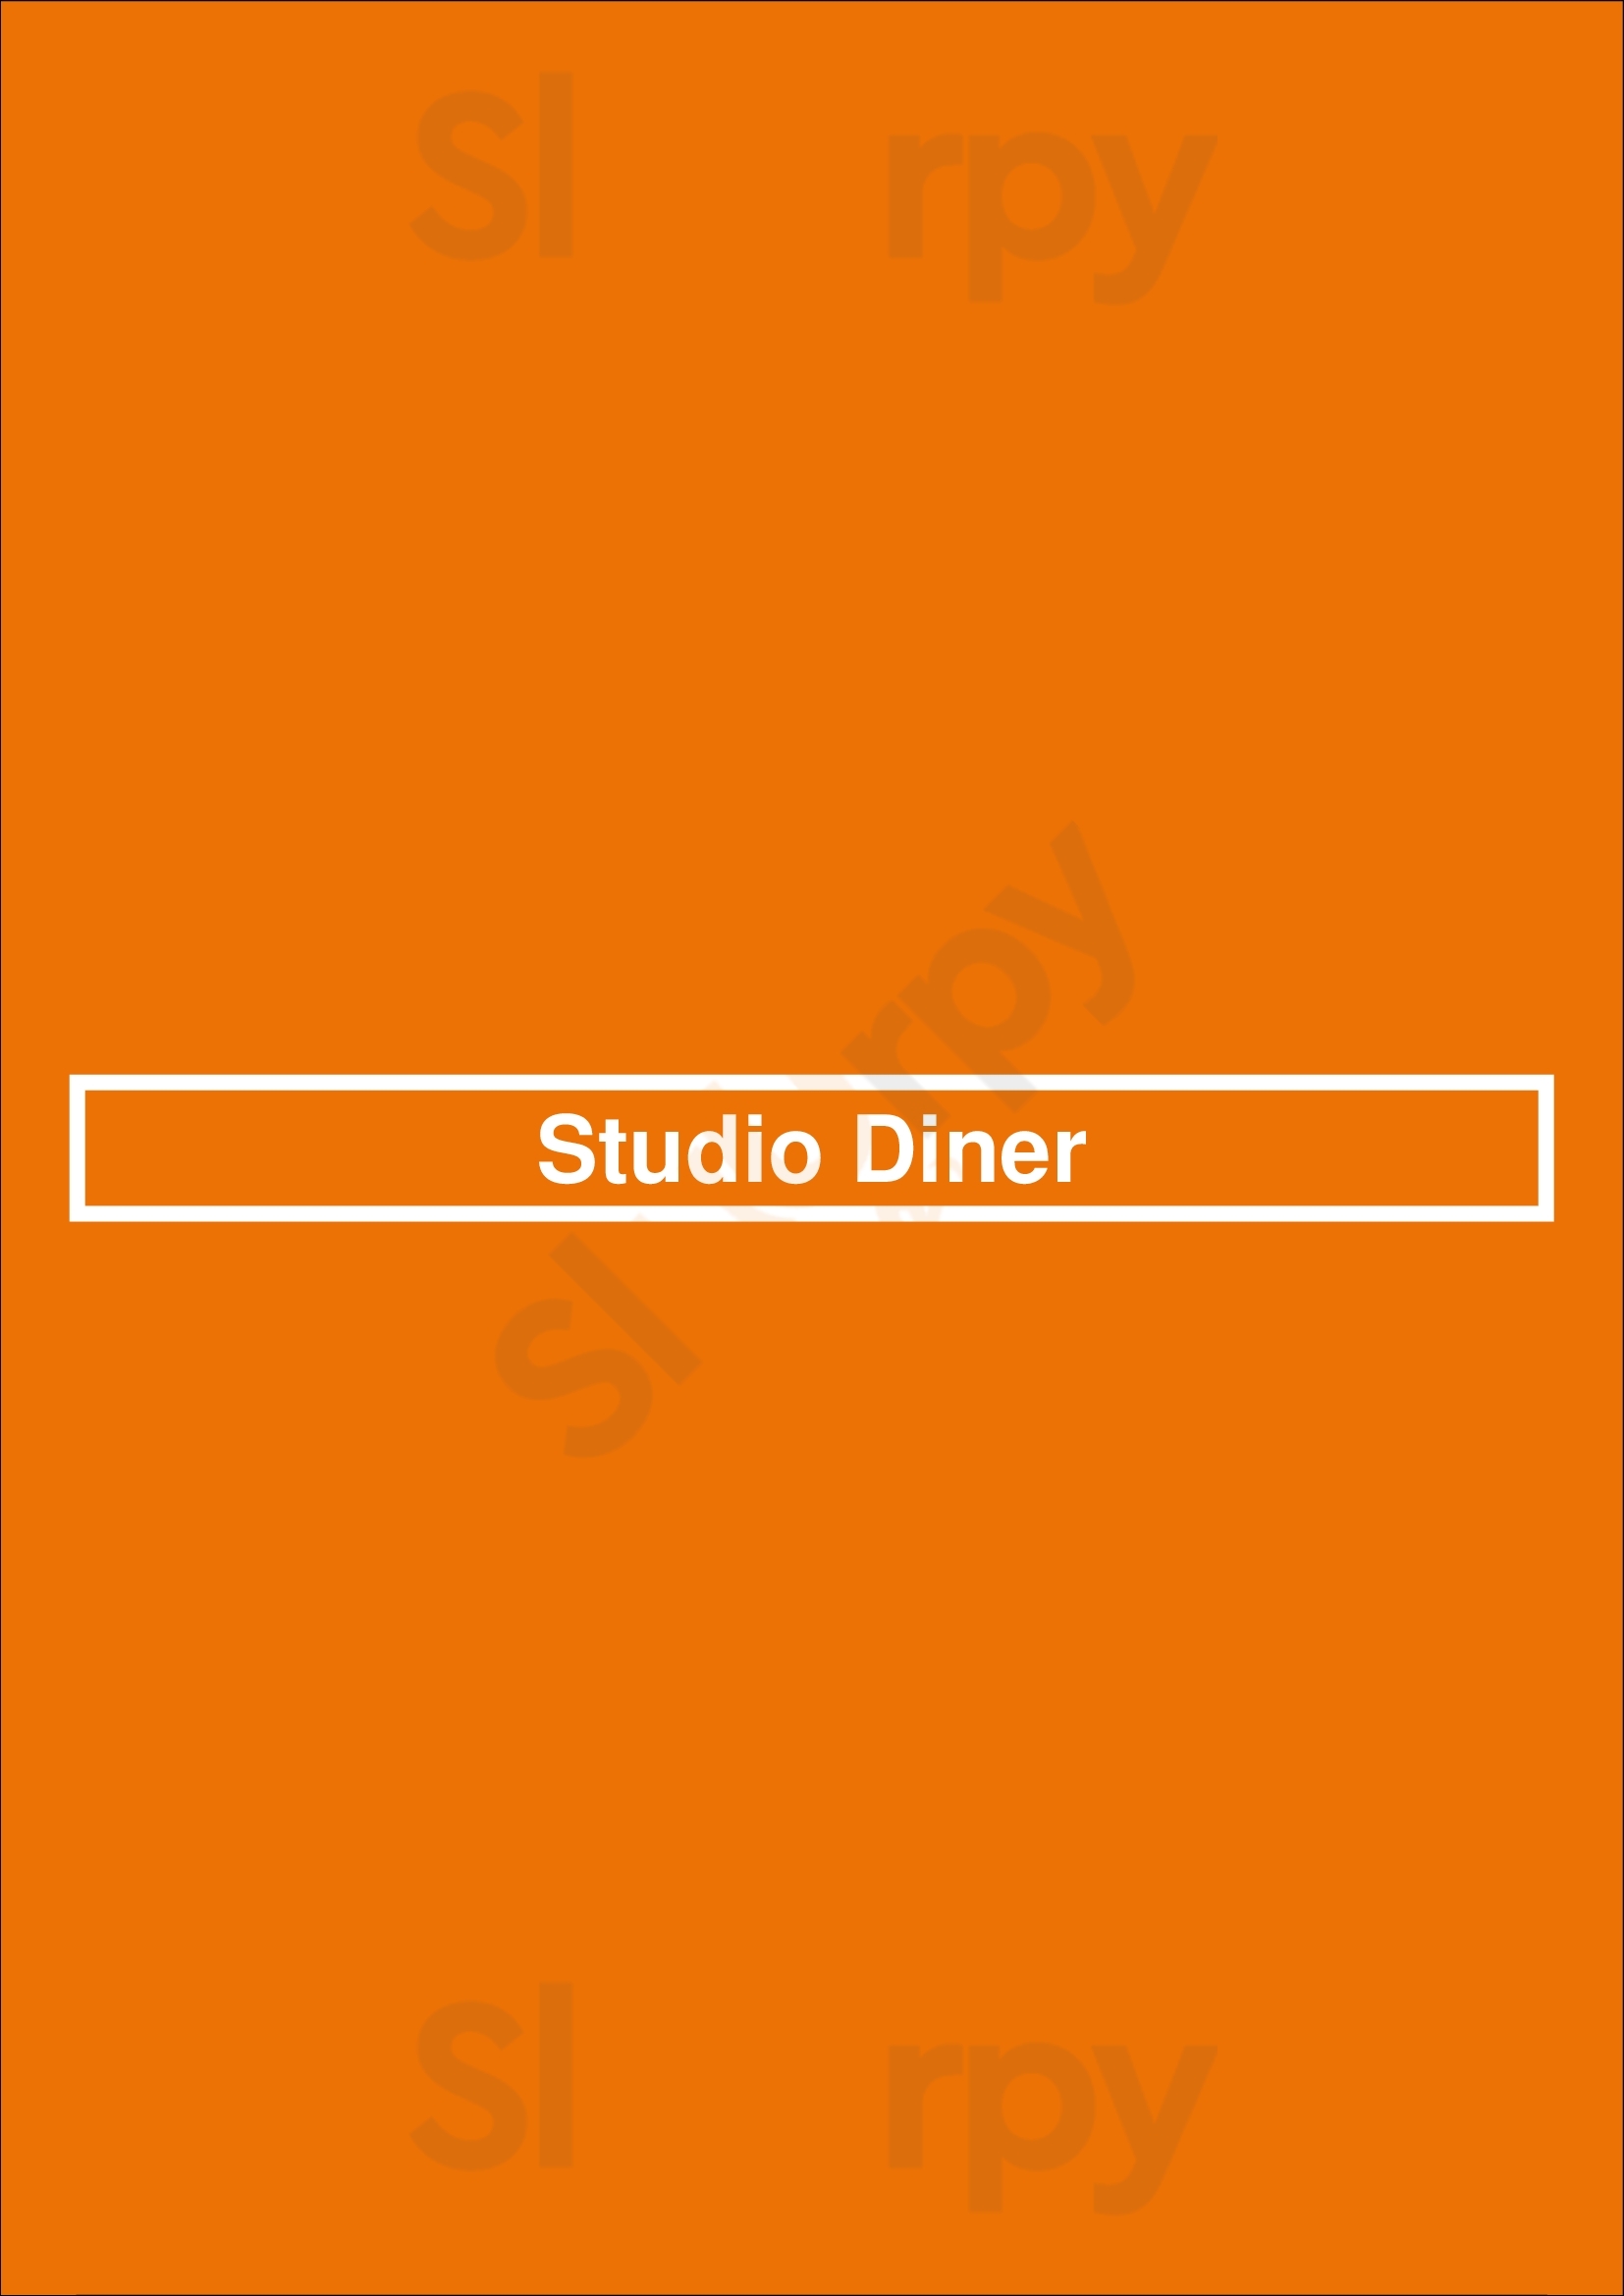 Studio Diner San Diego Menu - 1